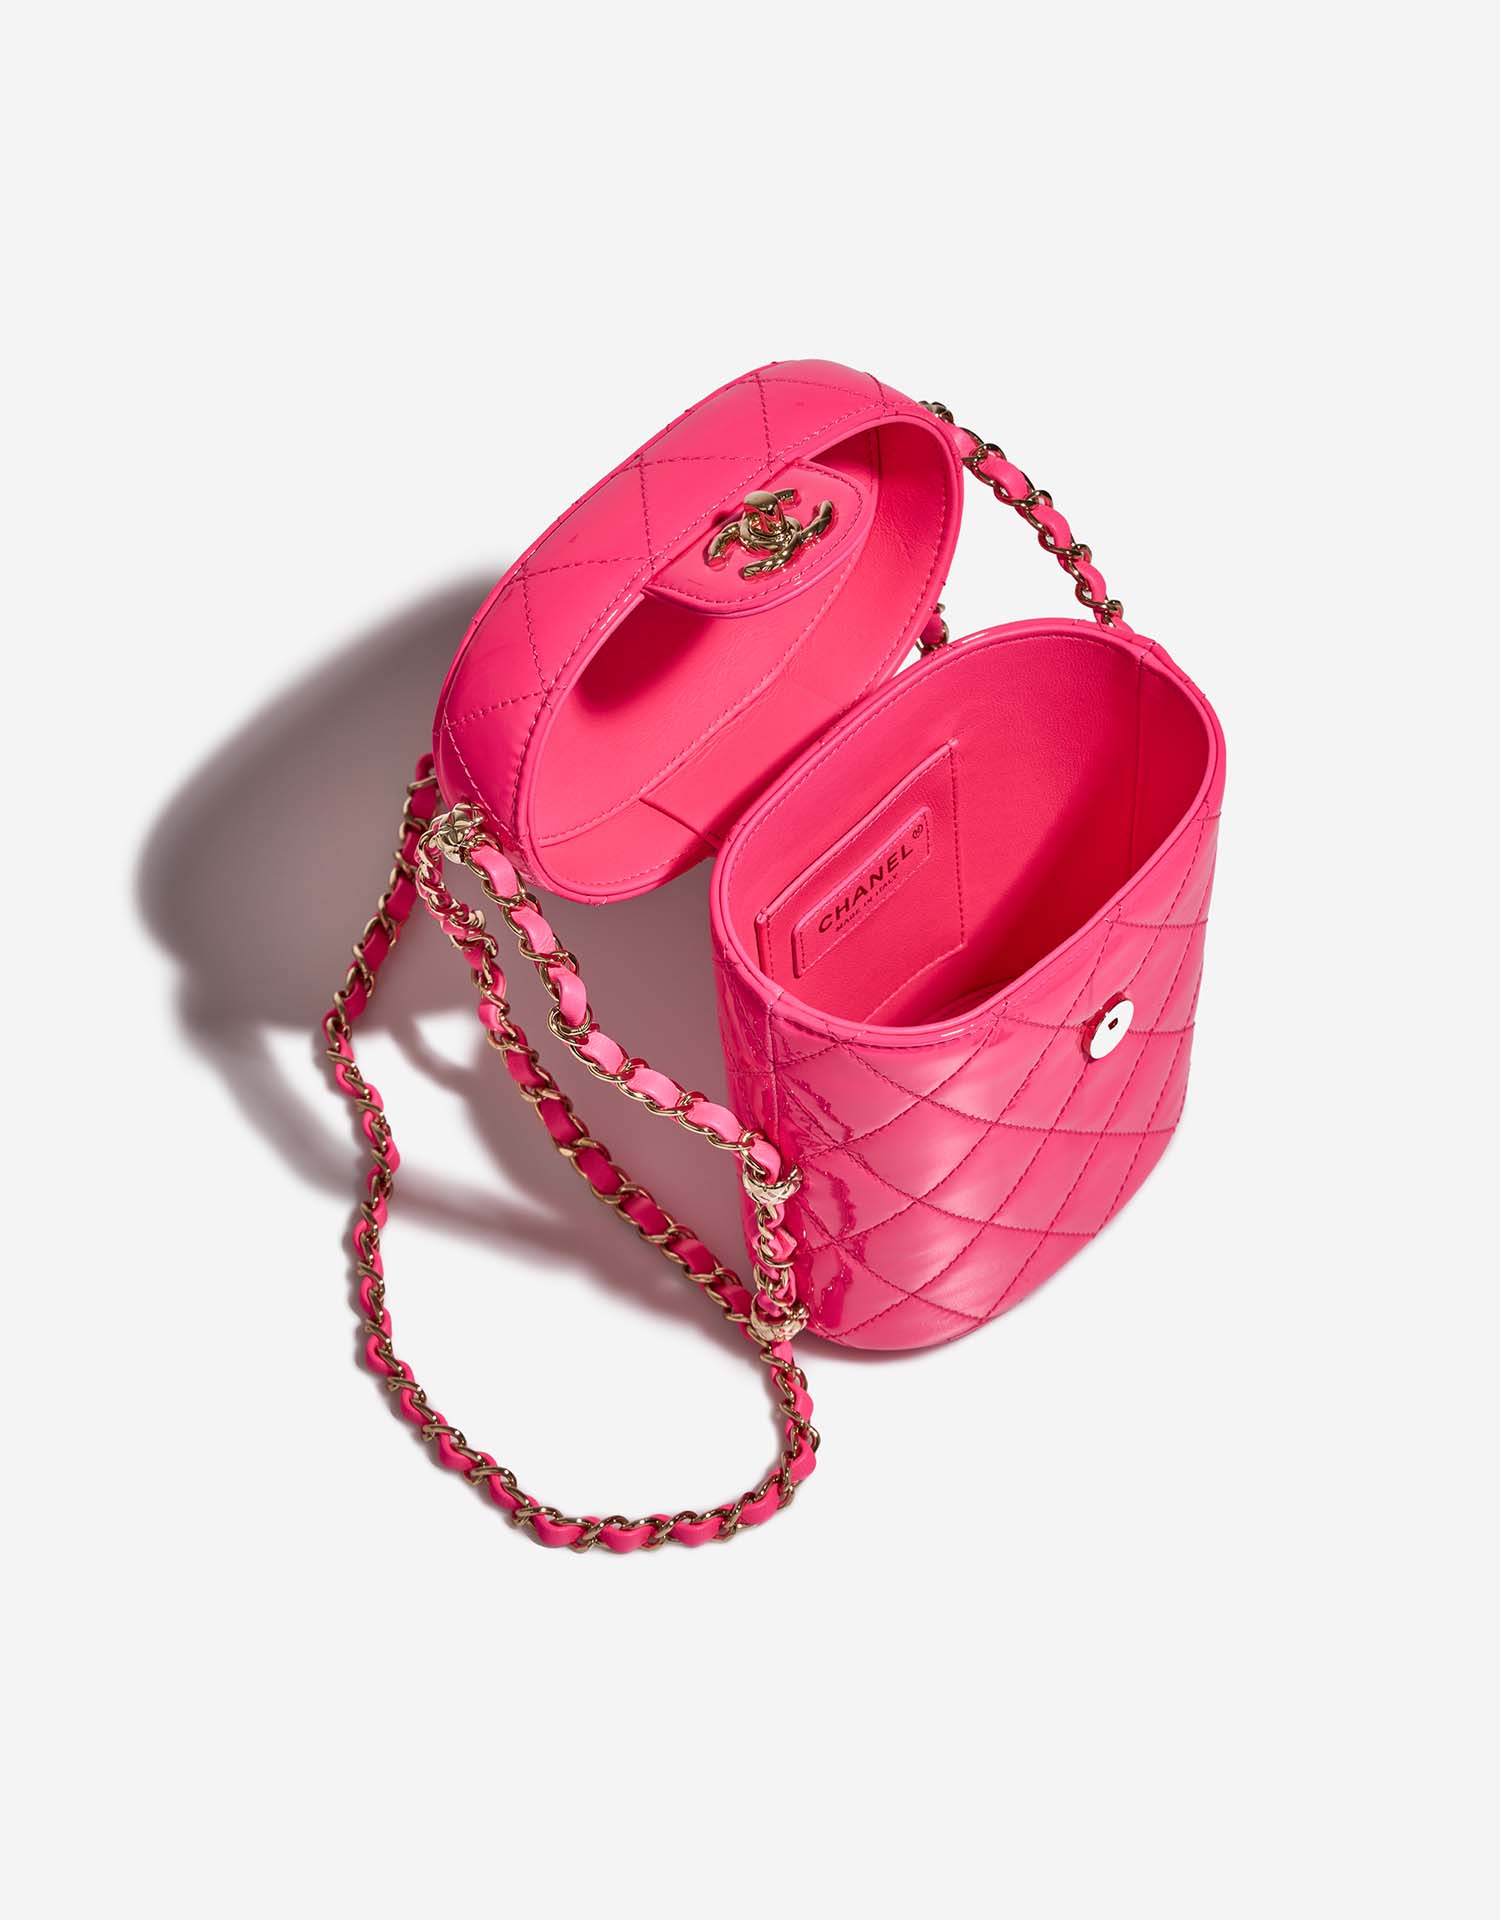 Chanel Vanity Small NeonPink Inside | Verkaufen Sie Ihre Designer-Tasche auf Saclab.com